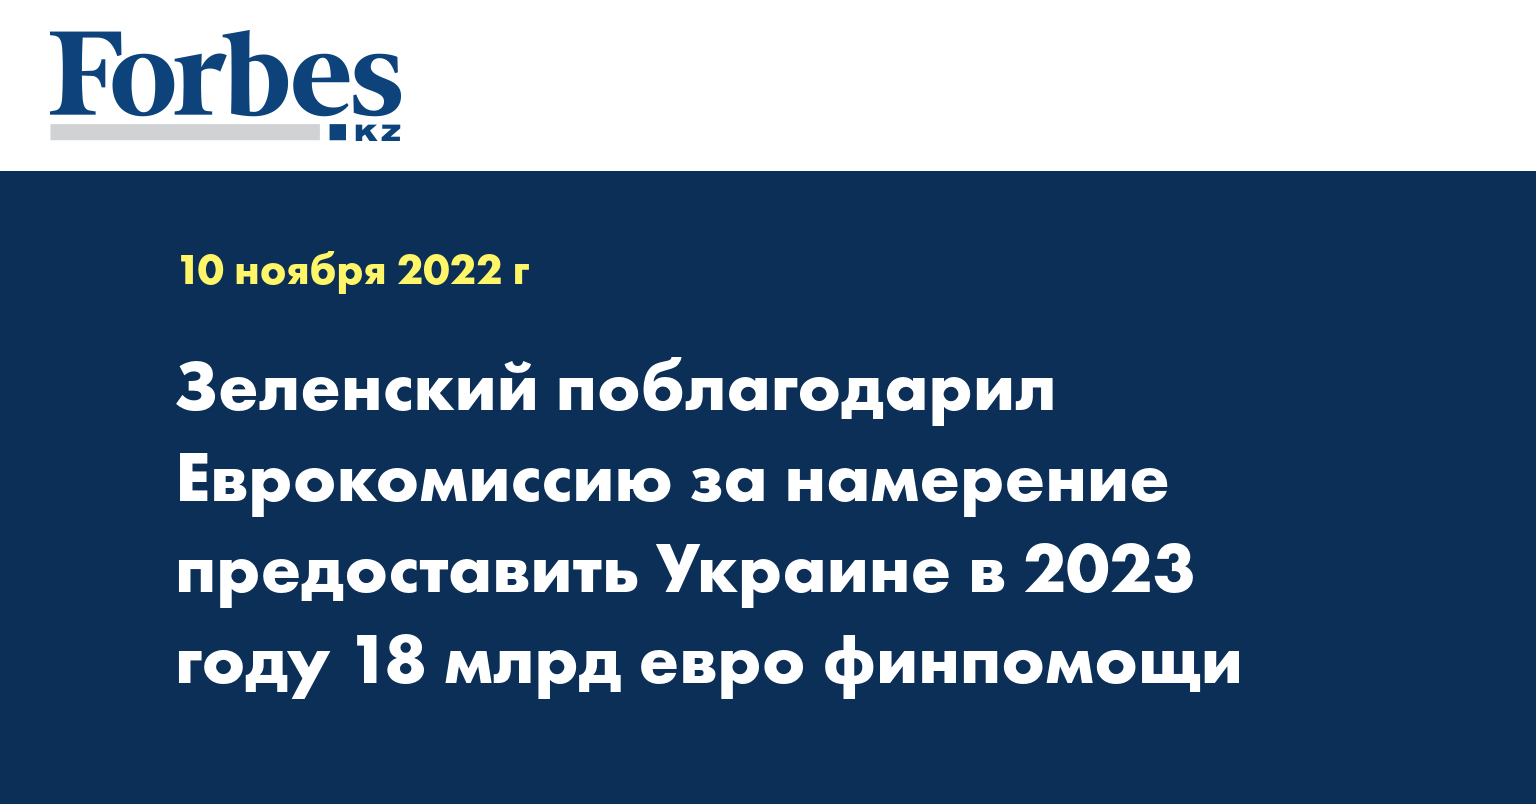 Зеленский поблагодарил Еврокомиссию за намерение предоставить Украине в 2023 году 18 млрд евро финпомощи